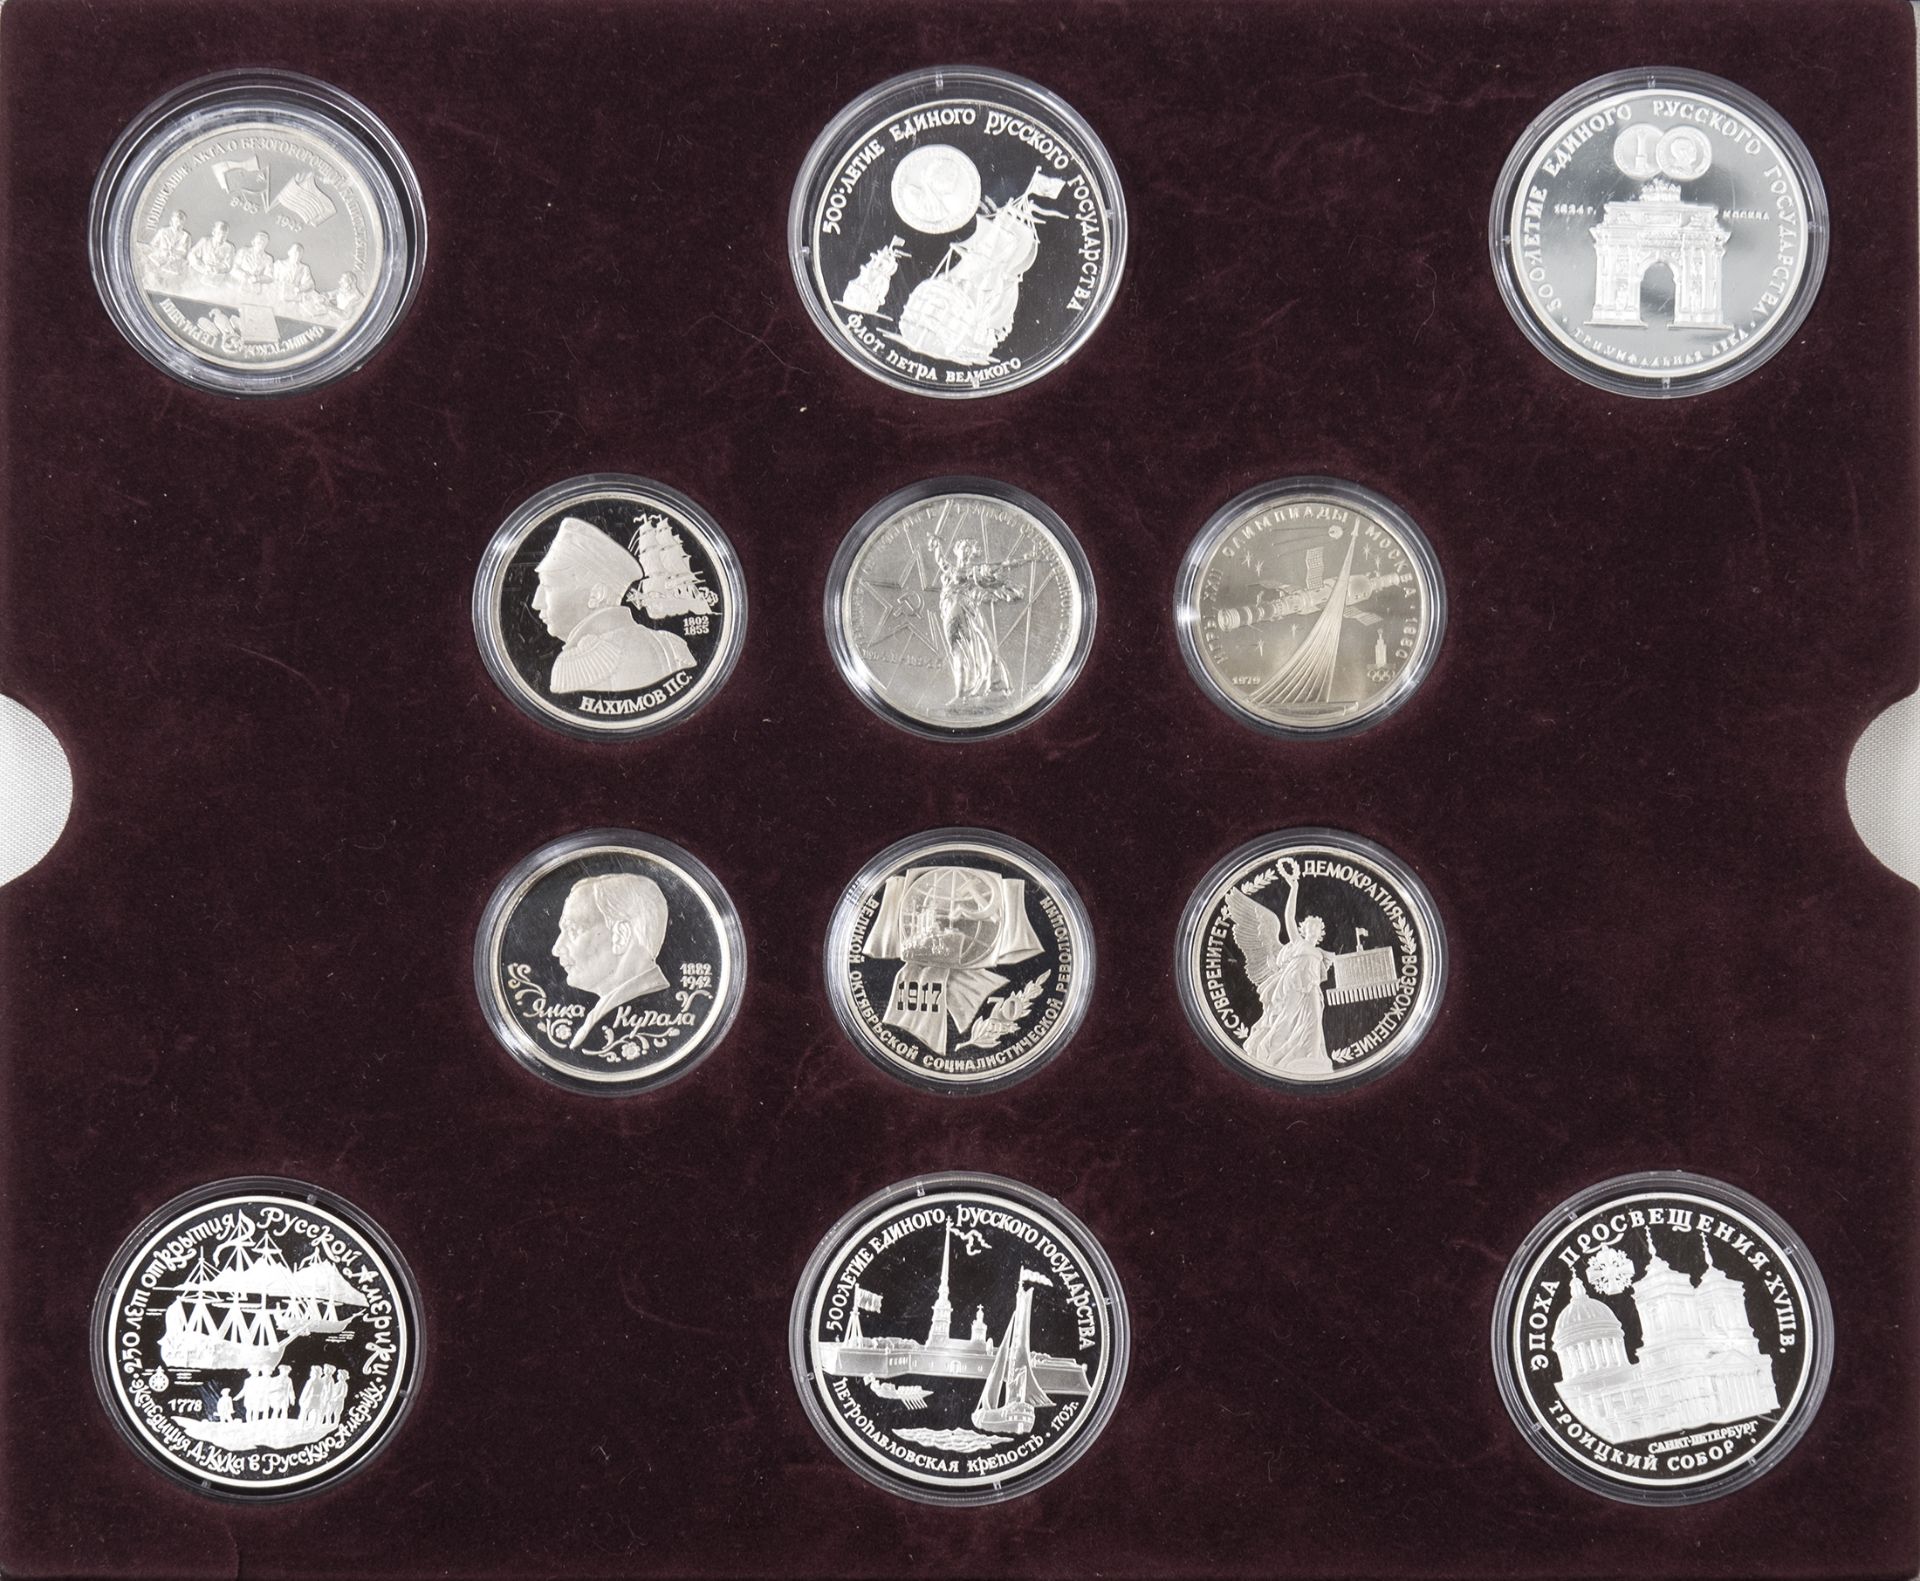 Sammlung 1000 Jahre Russland - die offiziellen Gedenkmünzen. Insgesamt 23 Münzen. Erhaltung: PP.